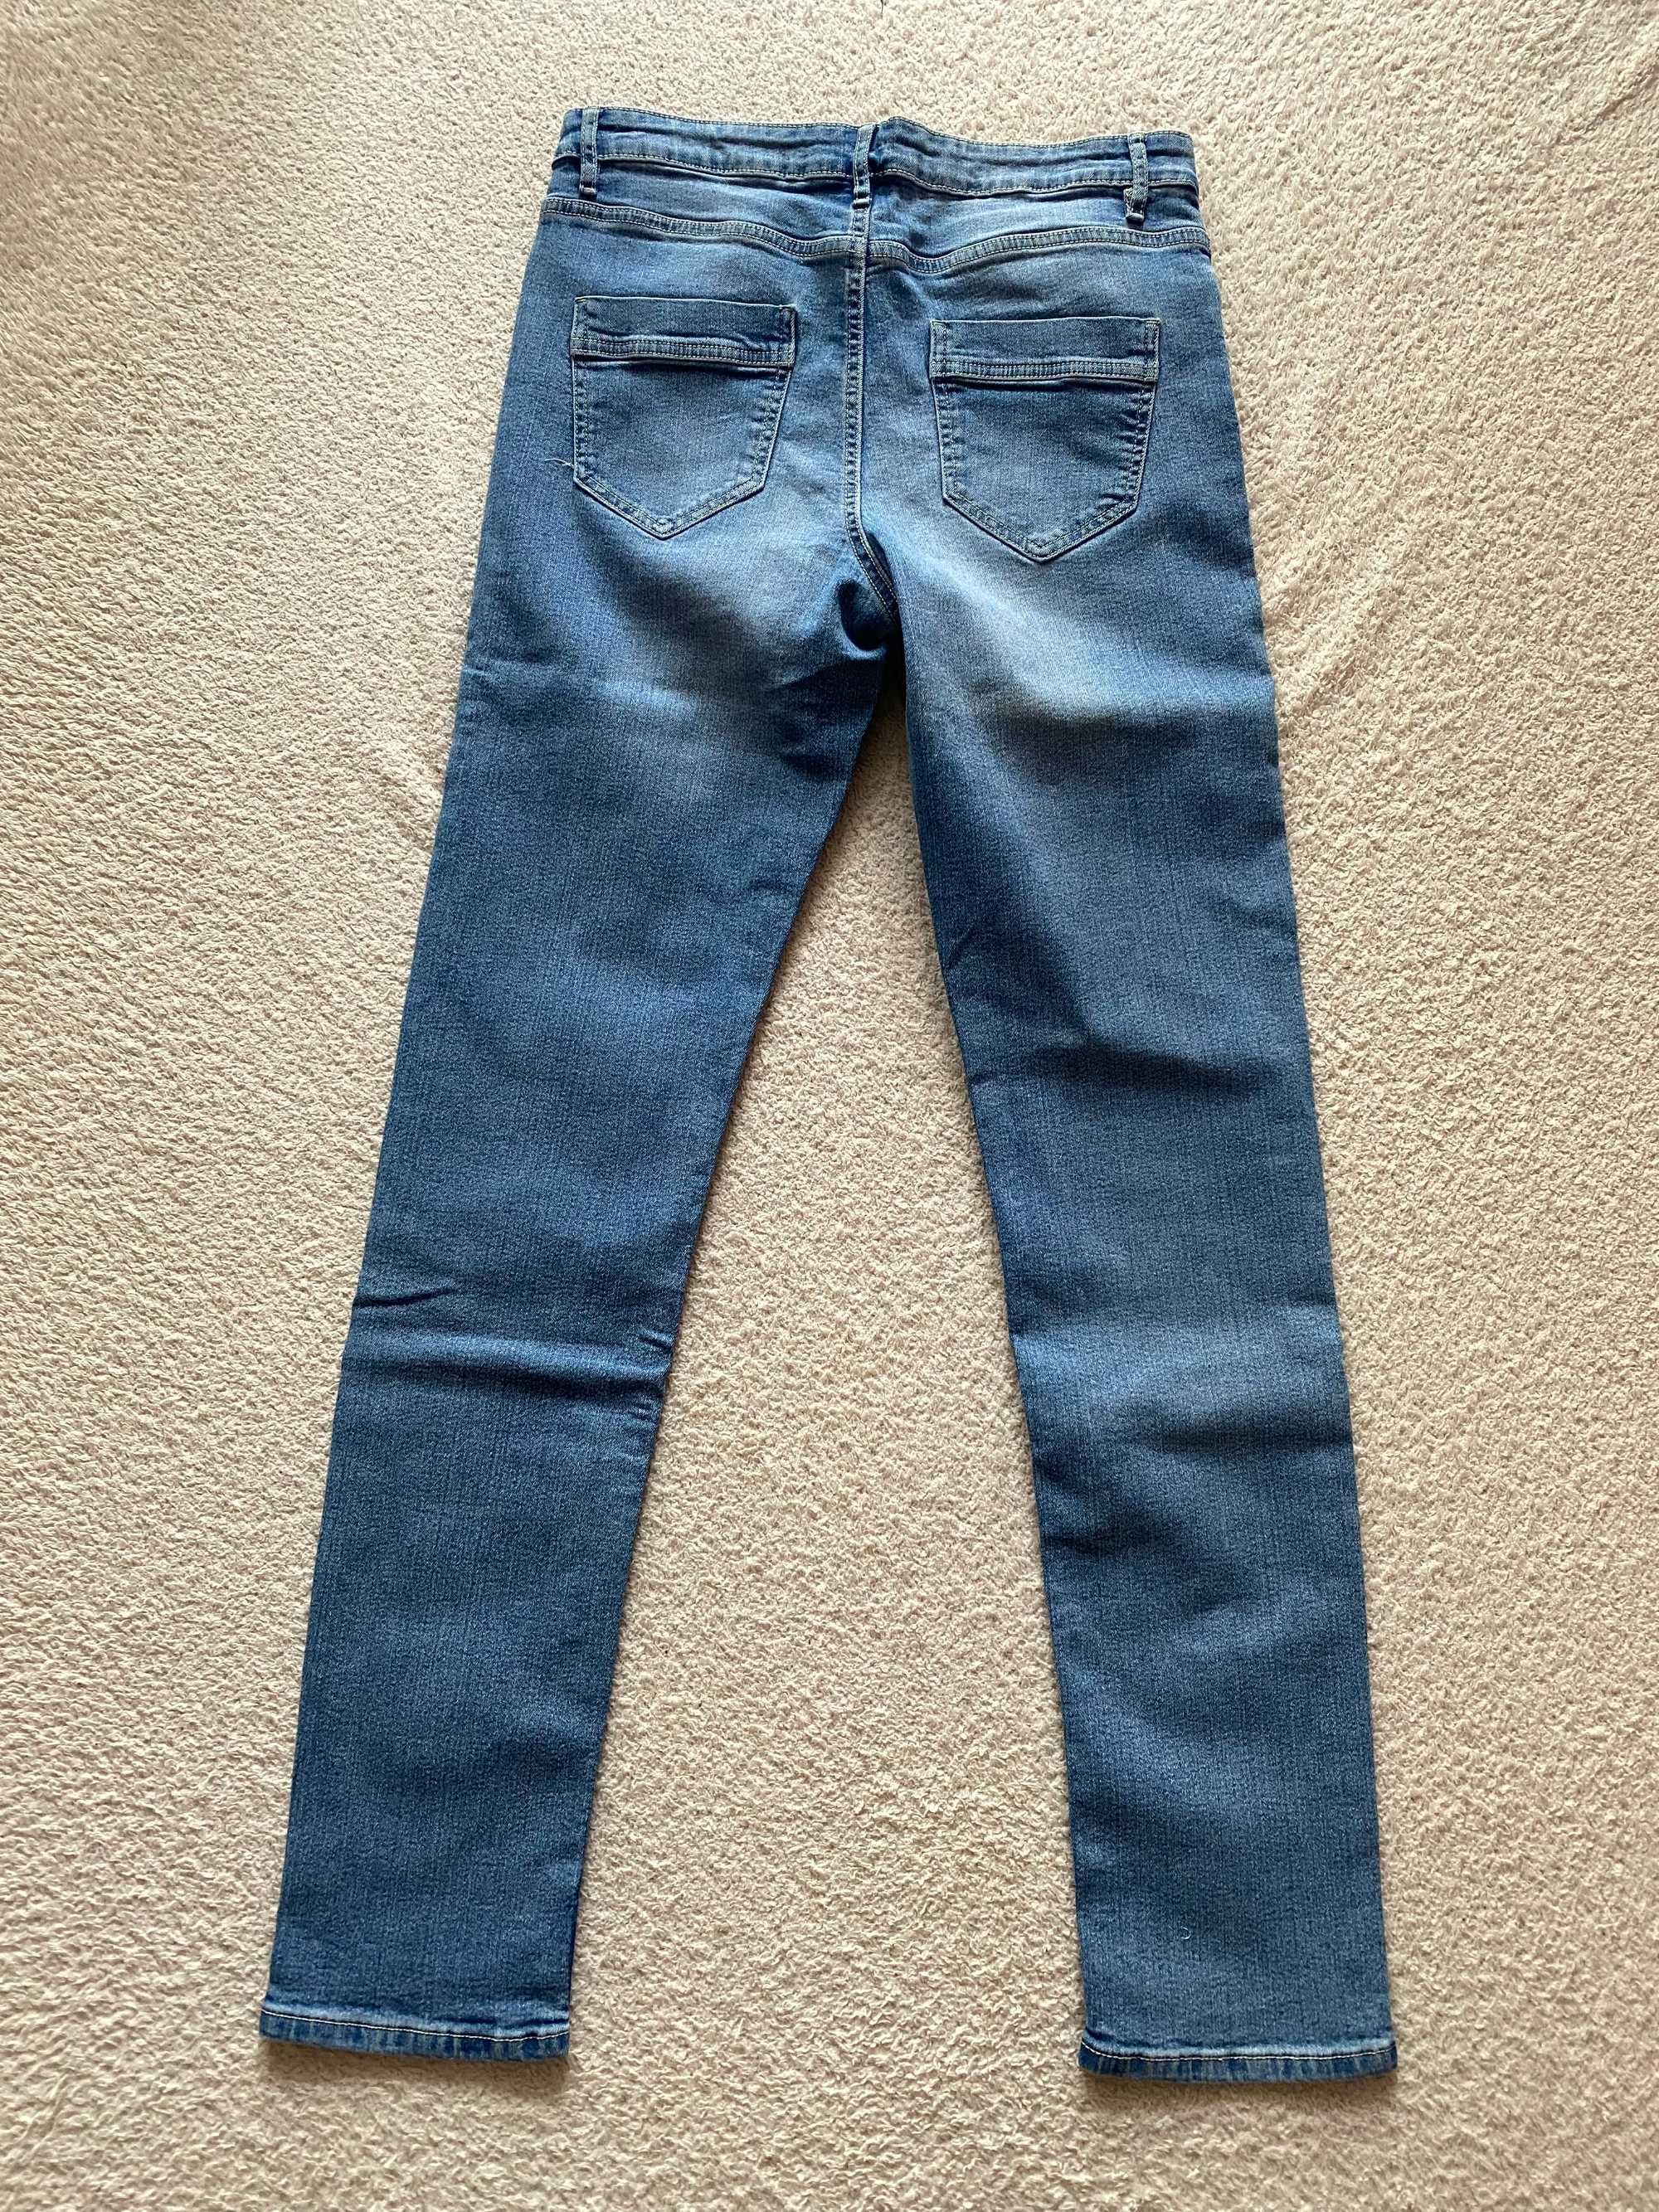 Spodnie jeansowe Esmara Lidl 42